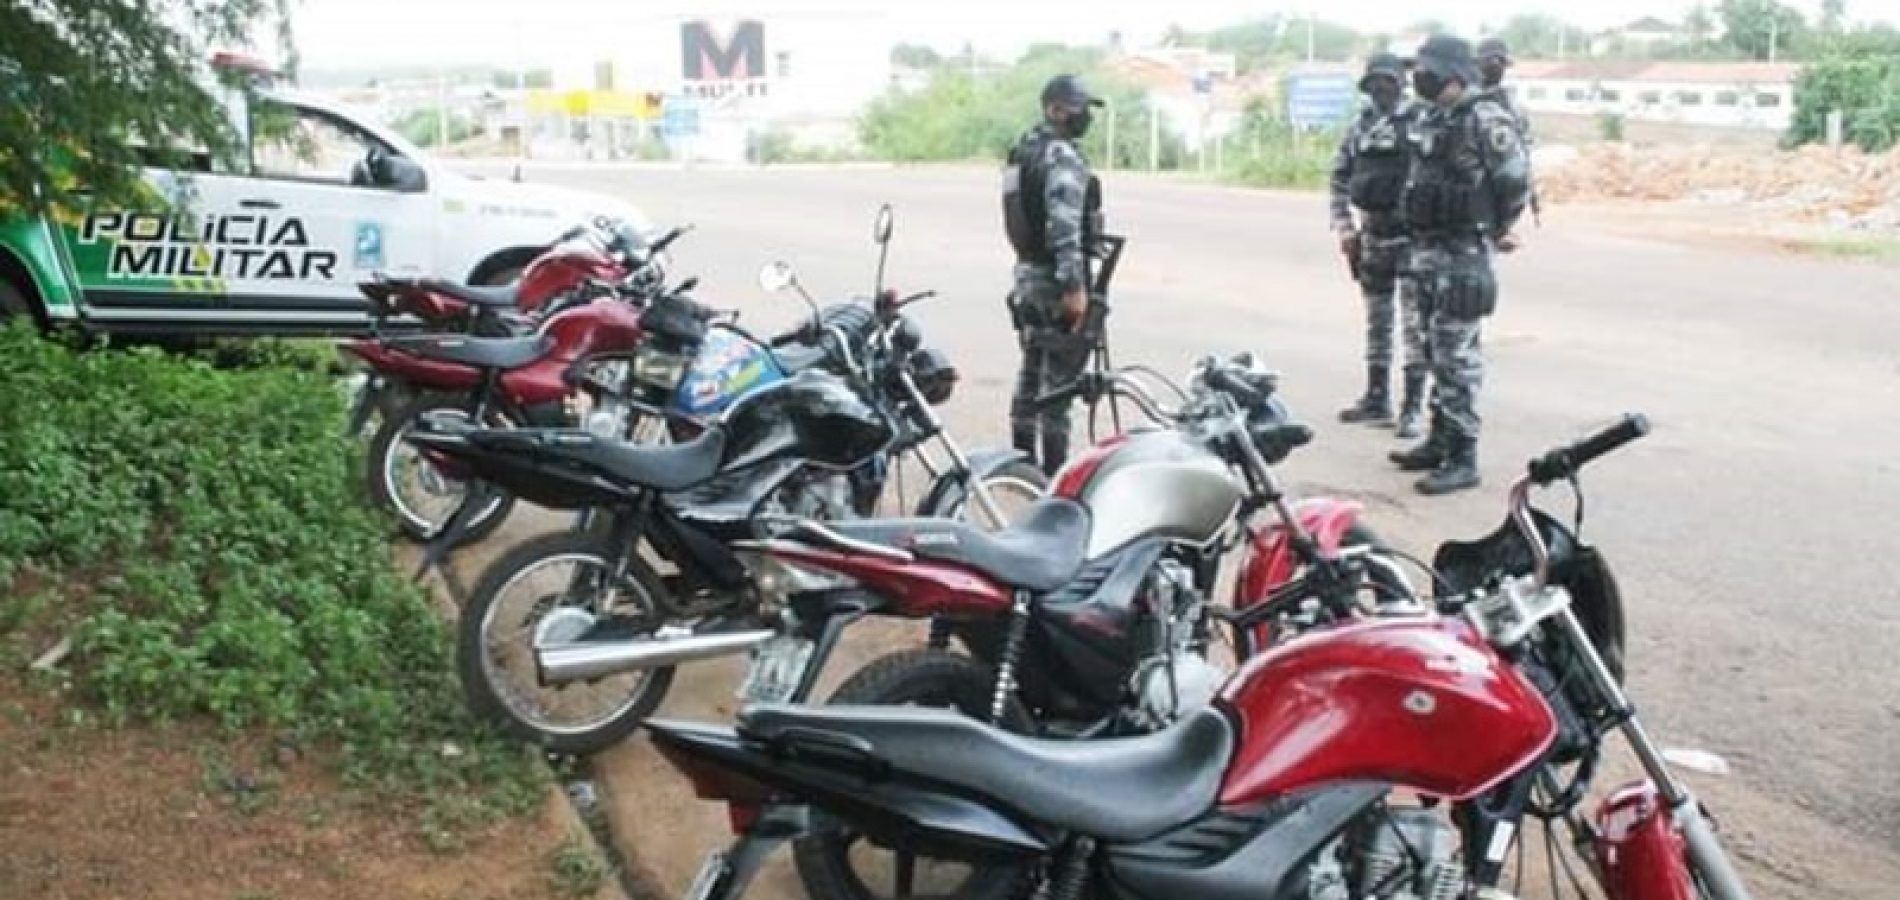 Polícia Militar apreende 22 motocicletas irregulares em Simplício Mendes